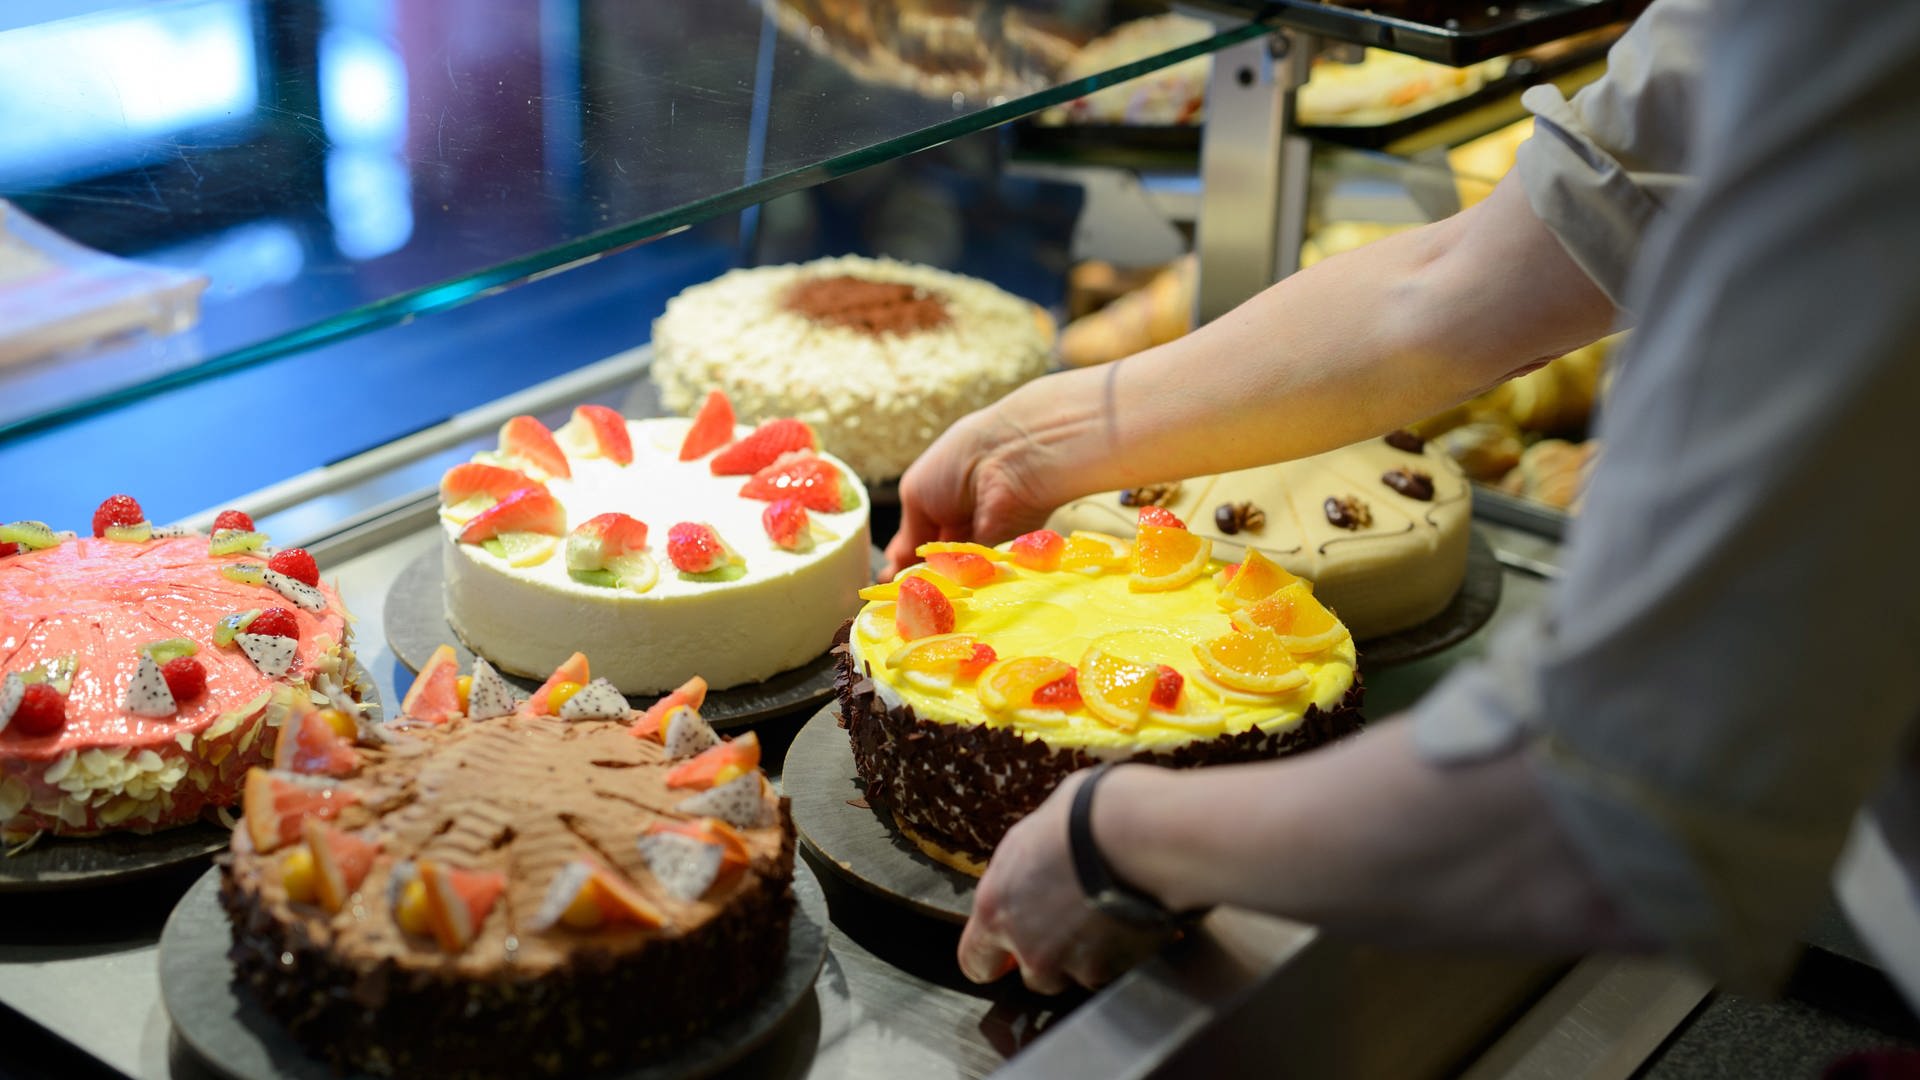 Streit löst Tortenschlacht in Wormser Bäckerei aus